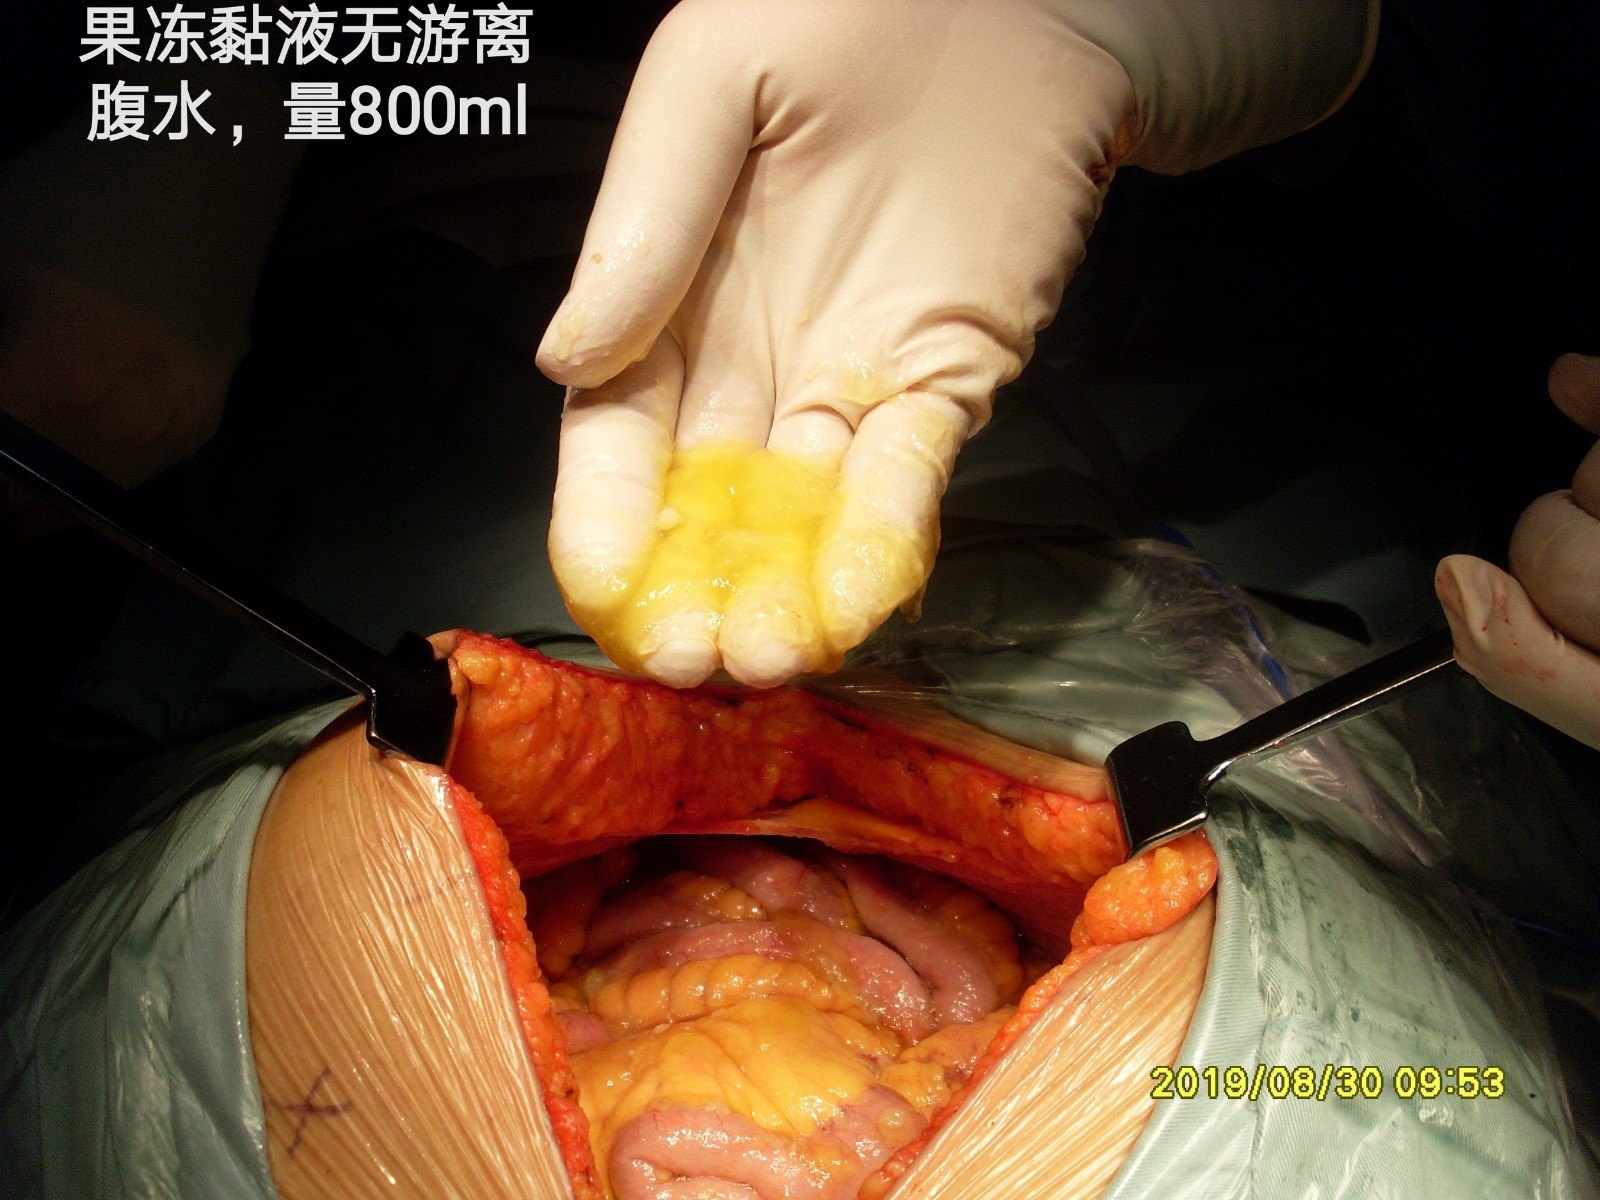 实施手术方案:双侧腹膜,盆腔腹膜,子宫双附件,douglas窝,全大网膜